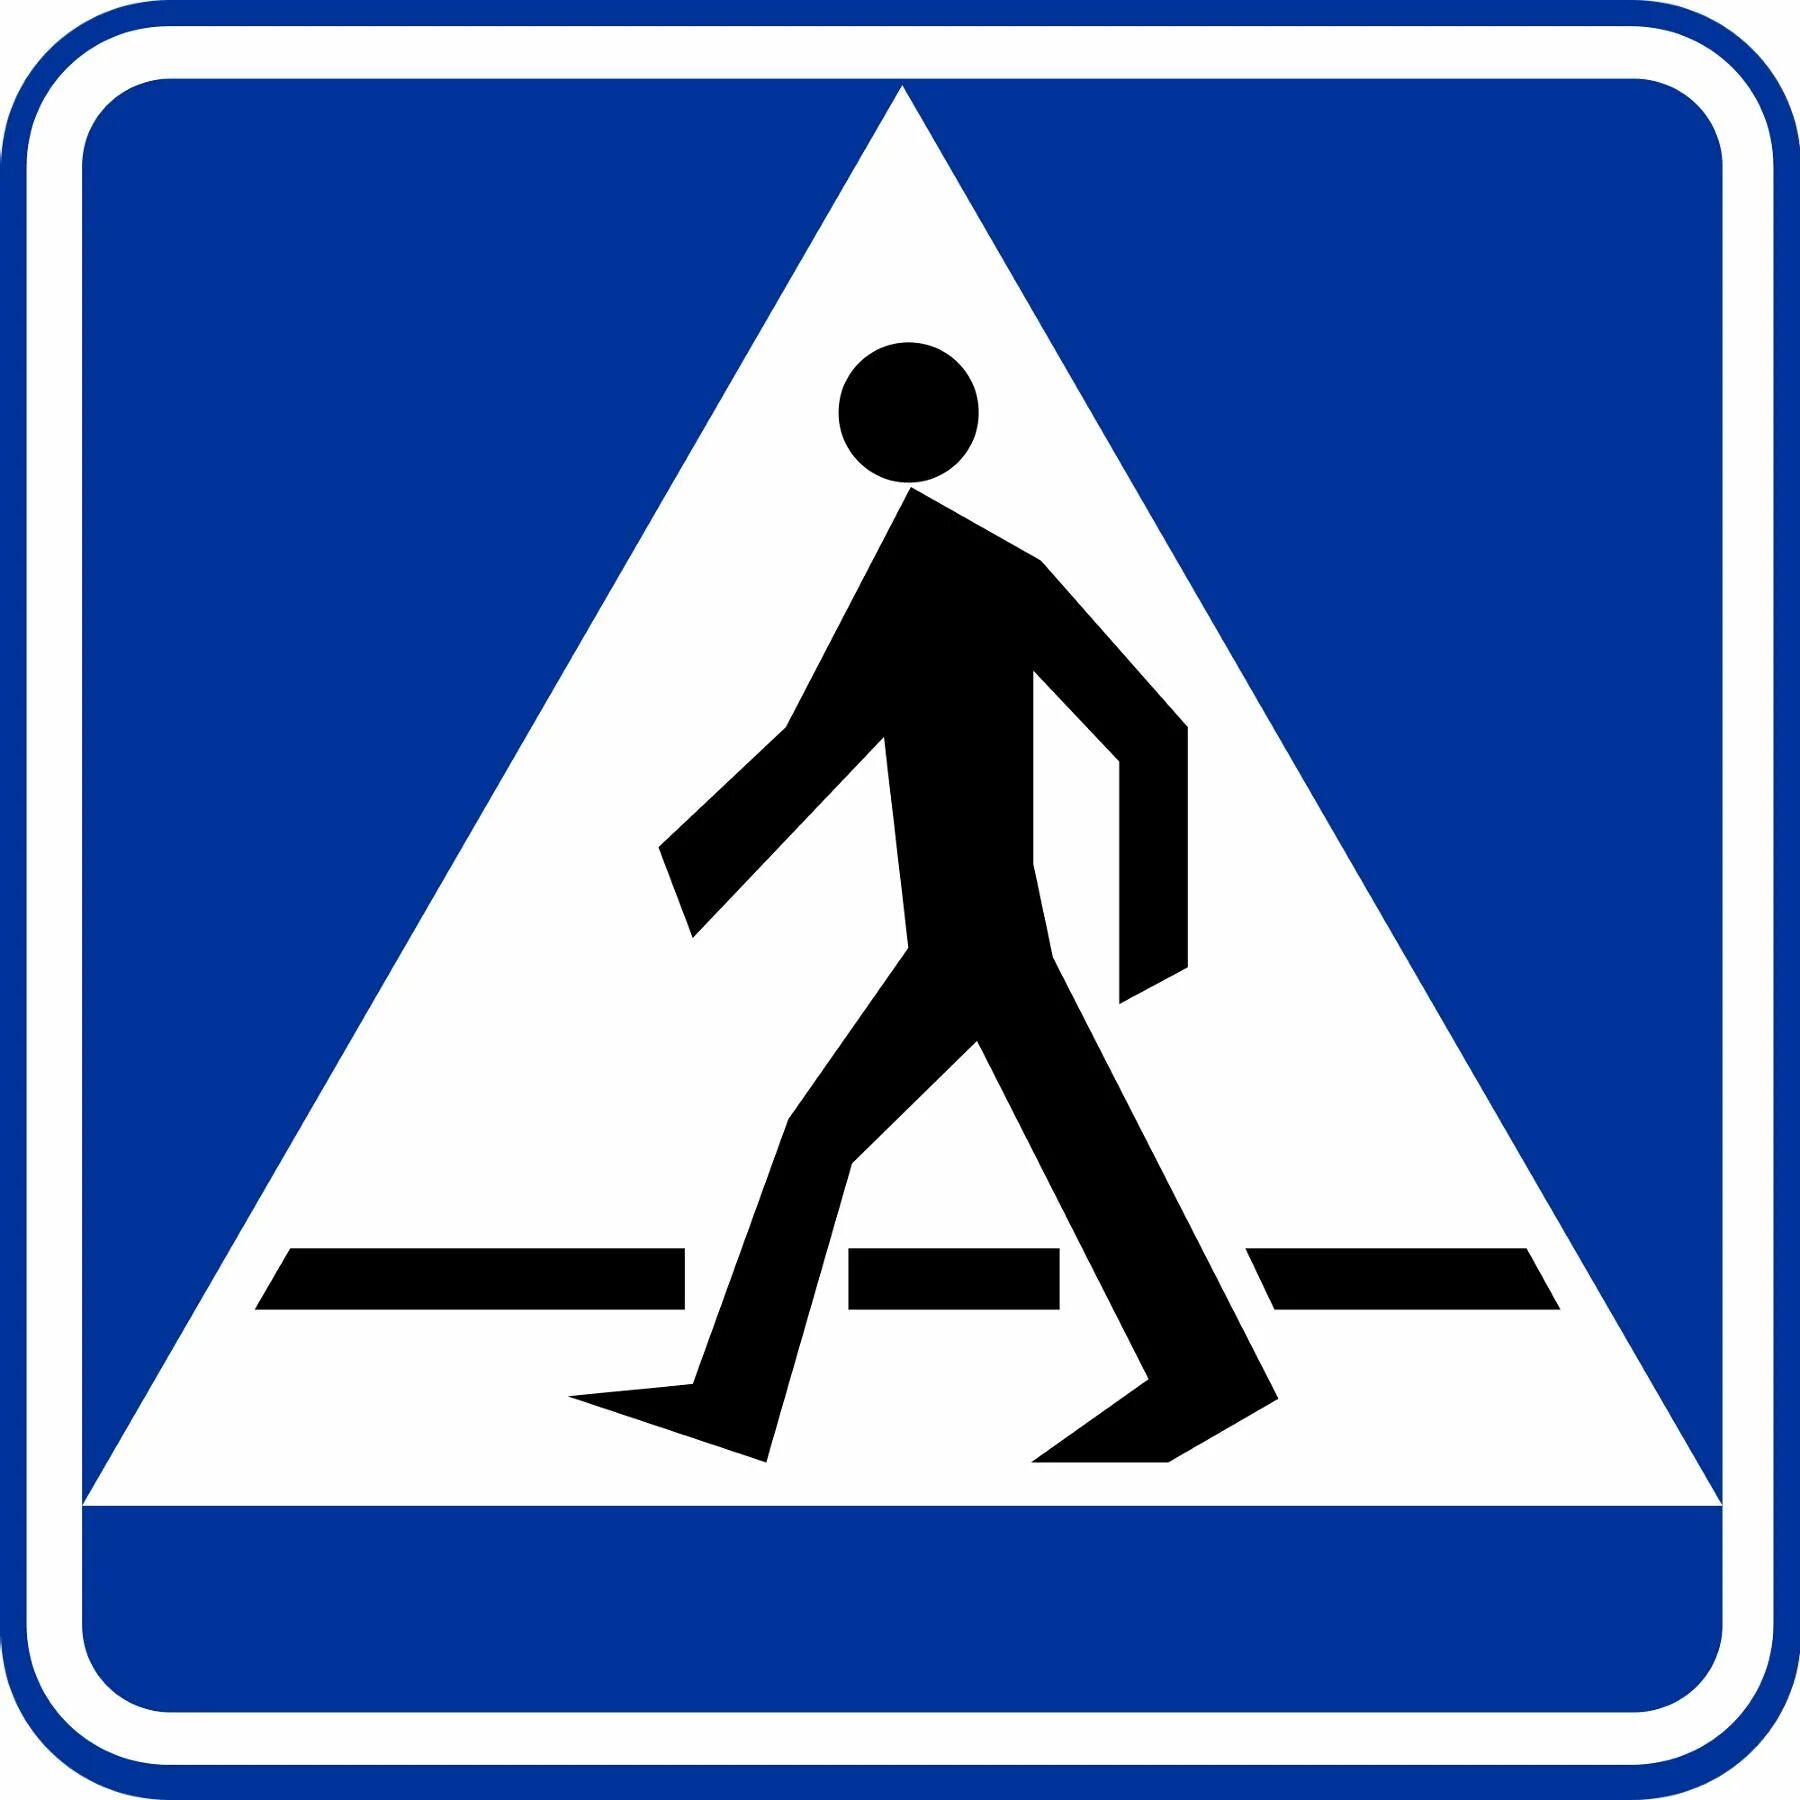 Знаки для пешеходов. Знак пешеходный переход. Дорожные знаки для пешеходов. Знак дорожного перехода. Пазл дорожного знака